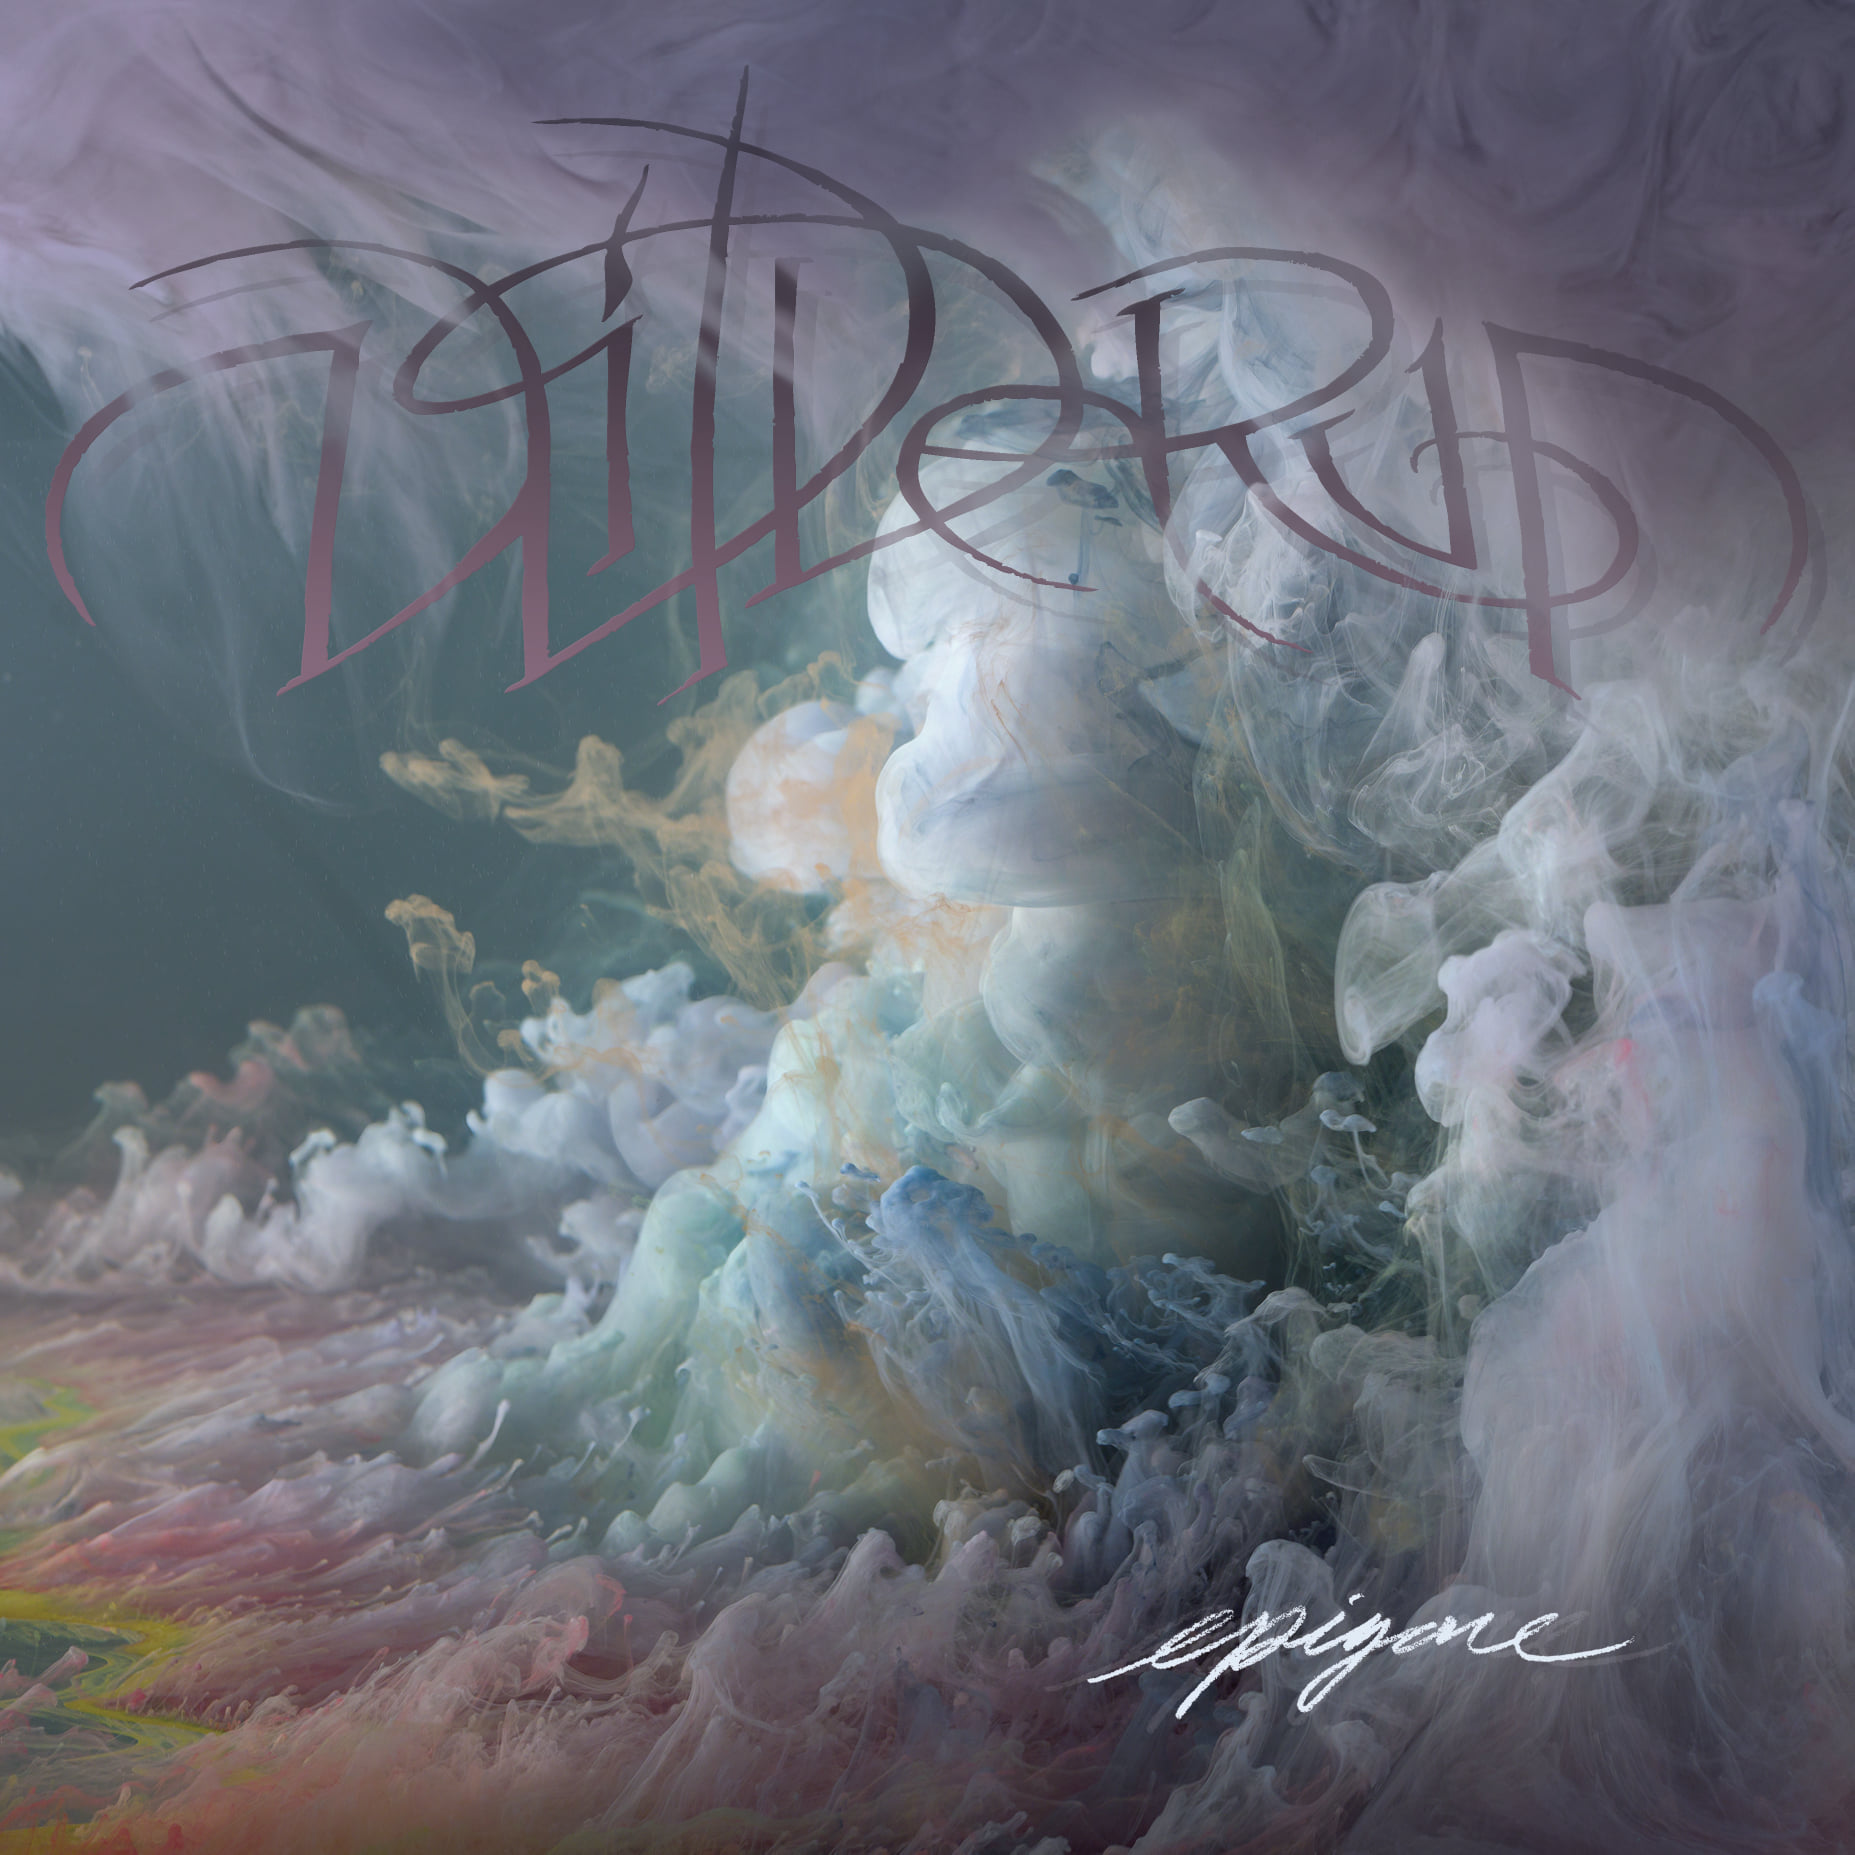 WILDERUN: New Single Entitled “Identifier”.